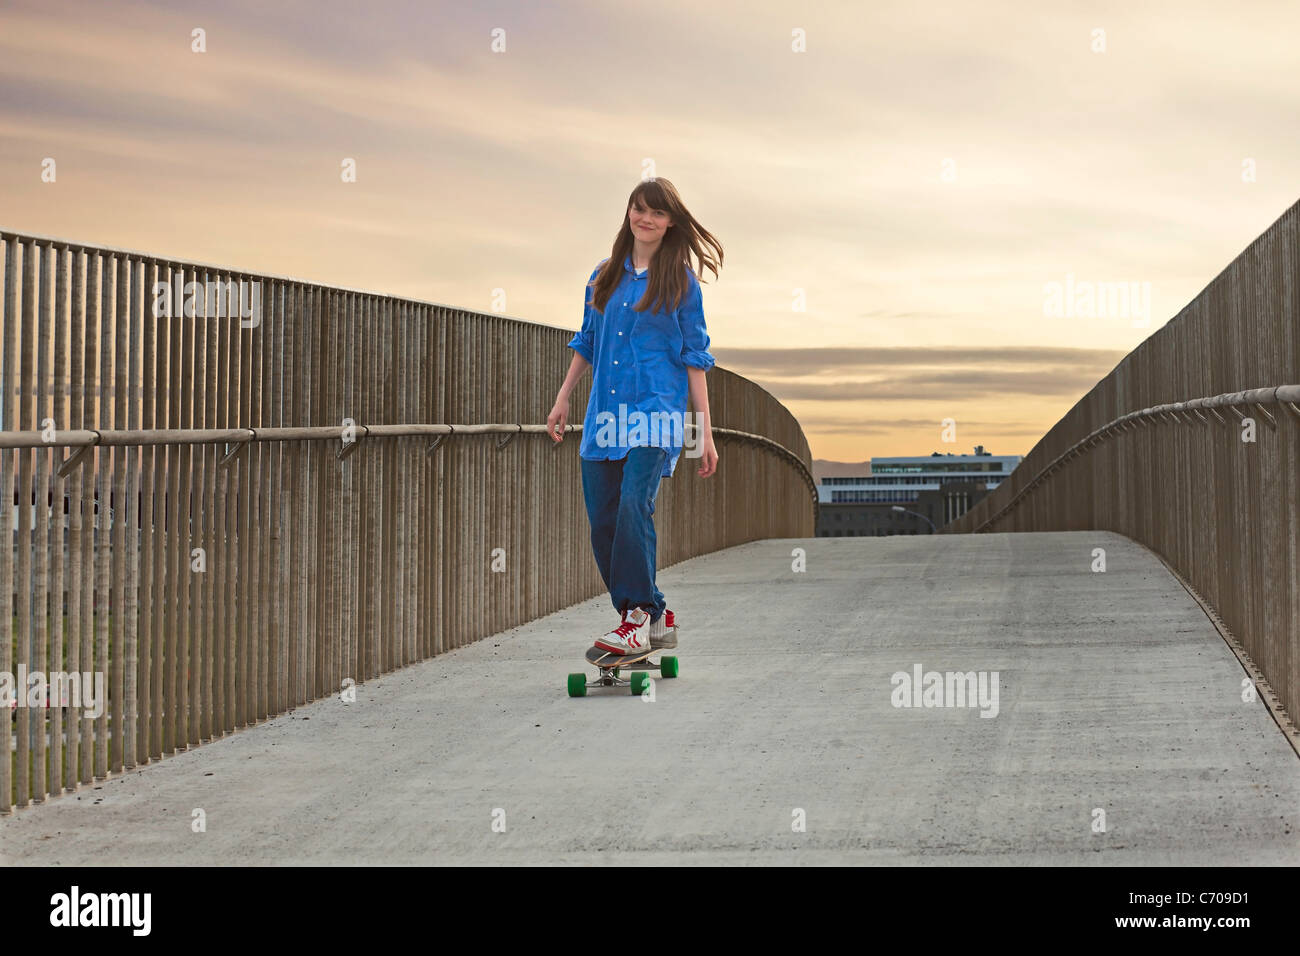 Girl riding skateboard dans le passage libre Banque D'Images